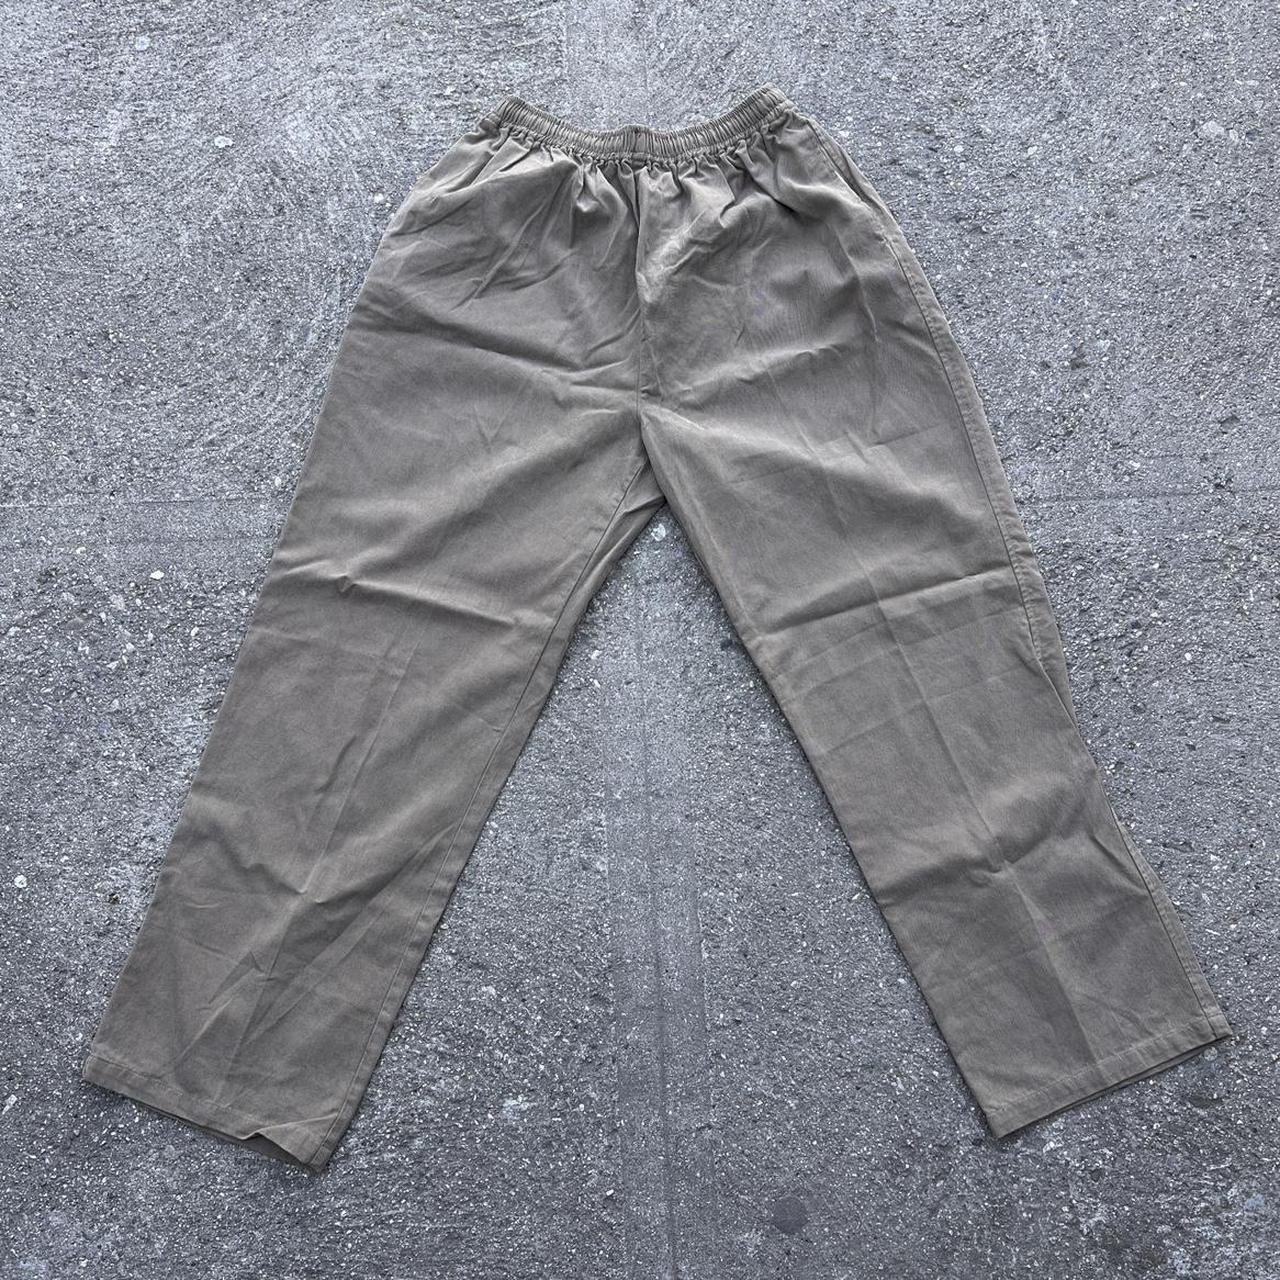 Cargo Parachute Pants Khaki Size Large (30”-32”) - Depop